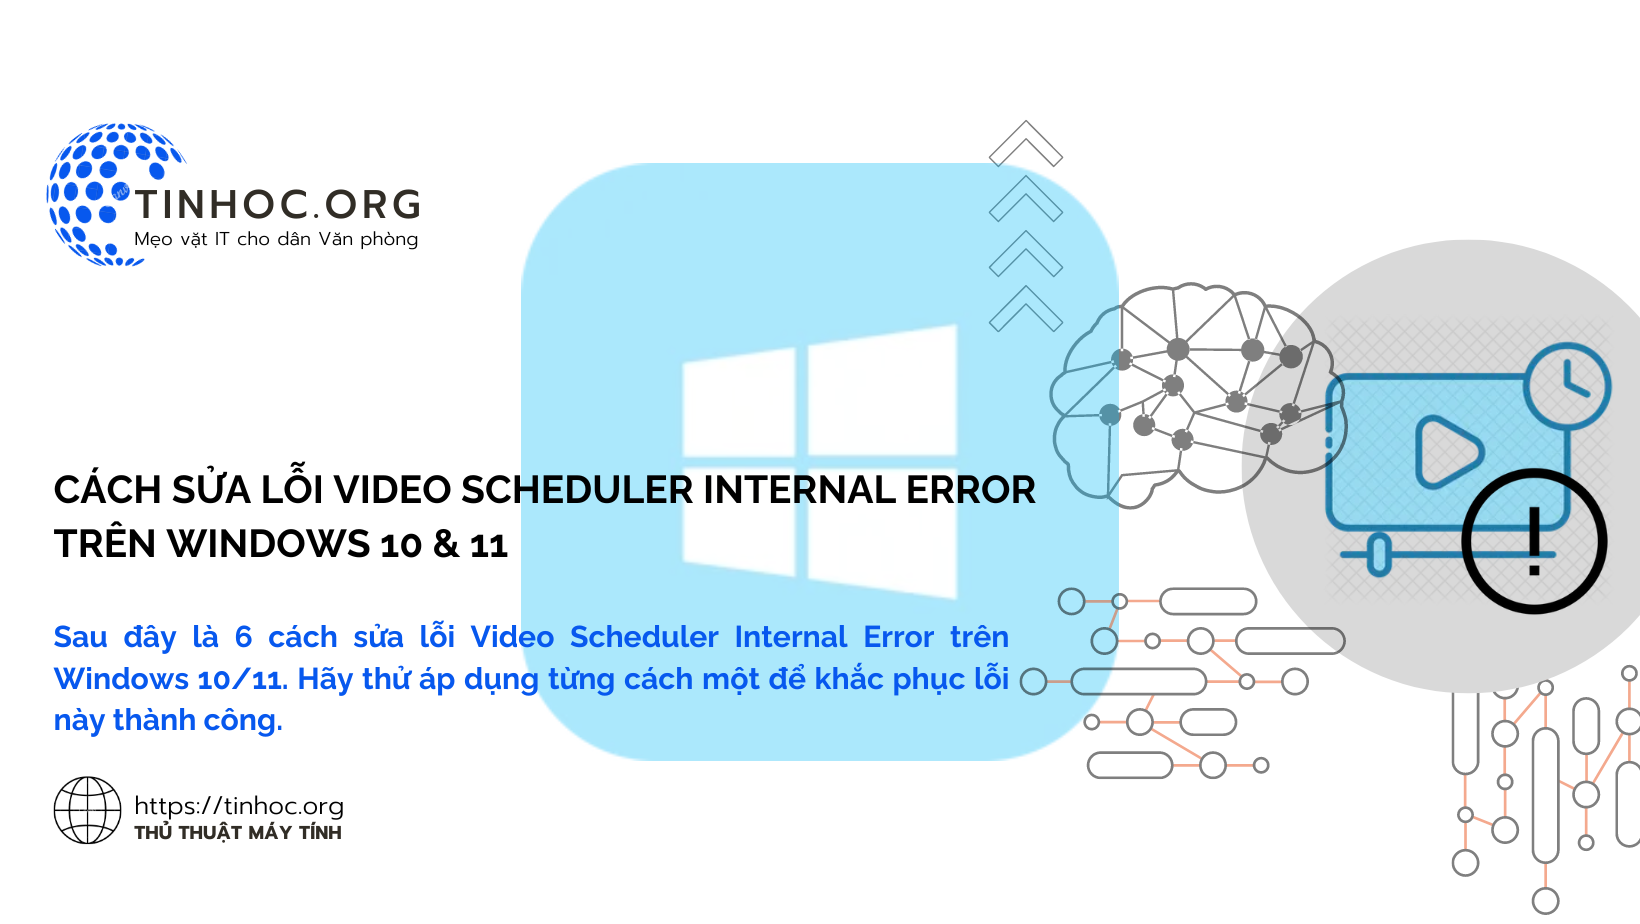 Sau đây là 6 cách sửa lỗi Video Scheduler Internal Error trên Windows 10/11. Hãy thử áp dụng từng cách một để khắc phục lỗi này thành công.